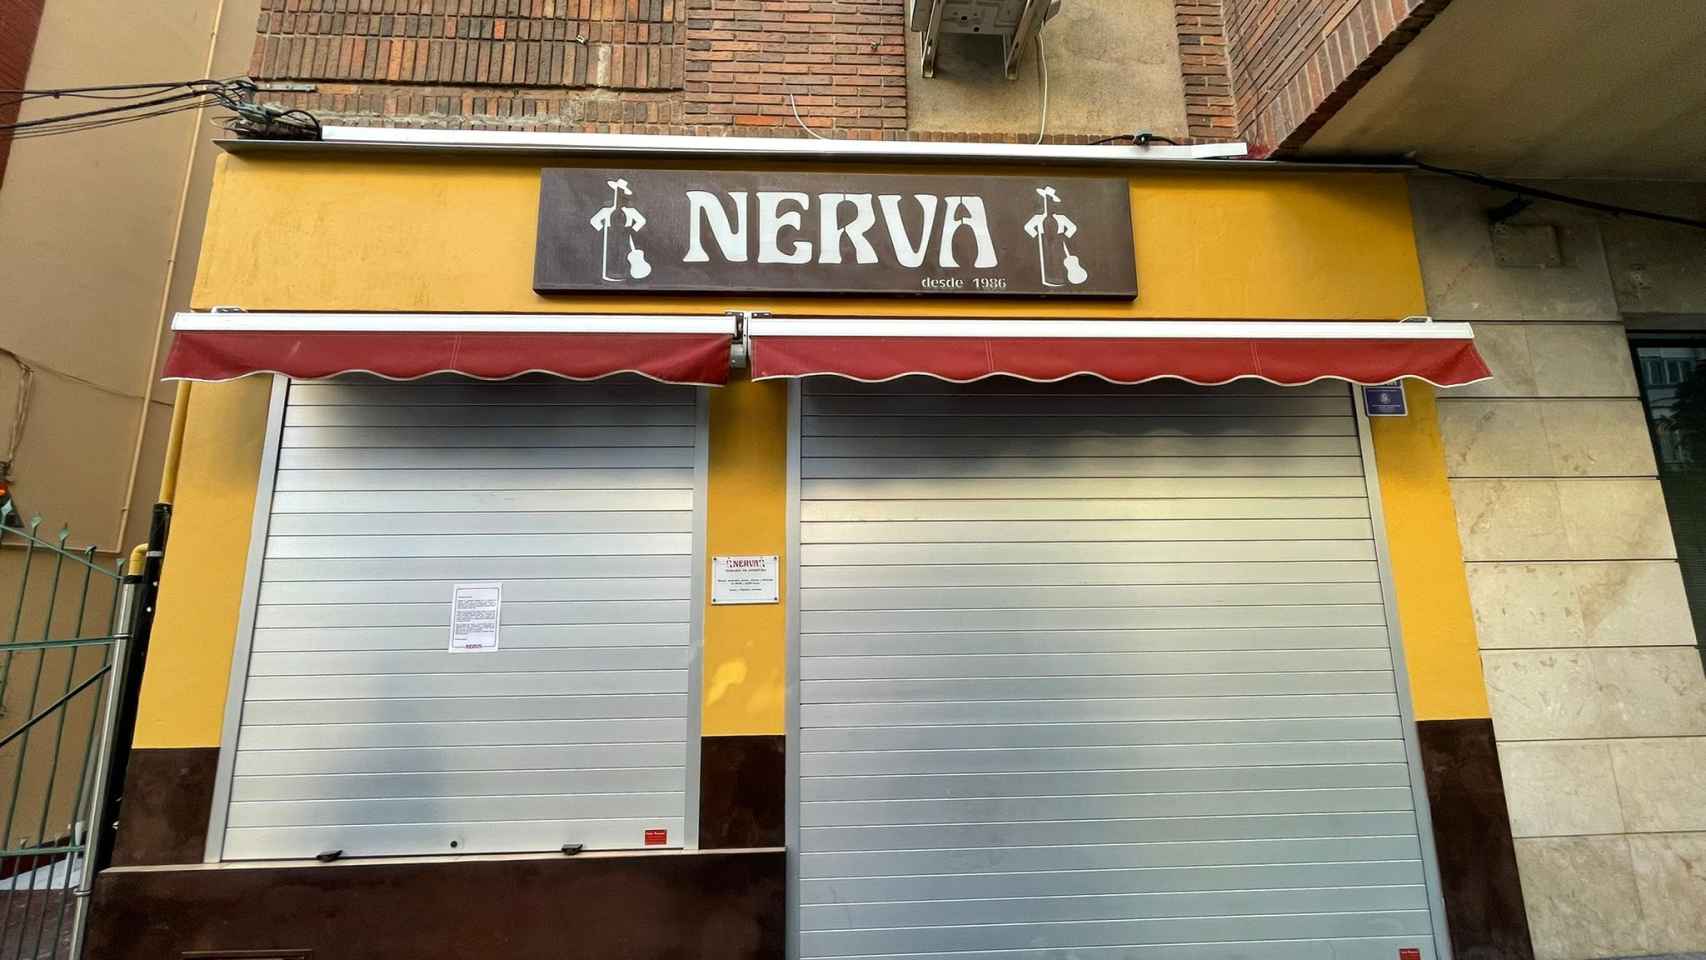 El bar Nerva, cerrado.